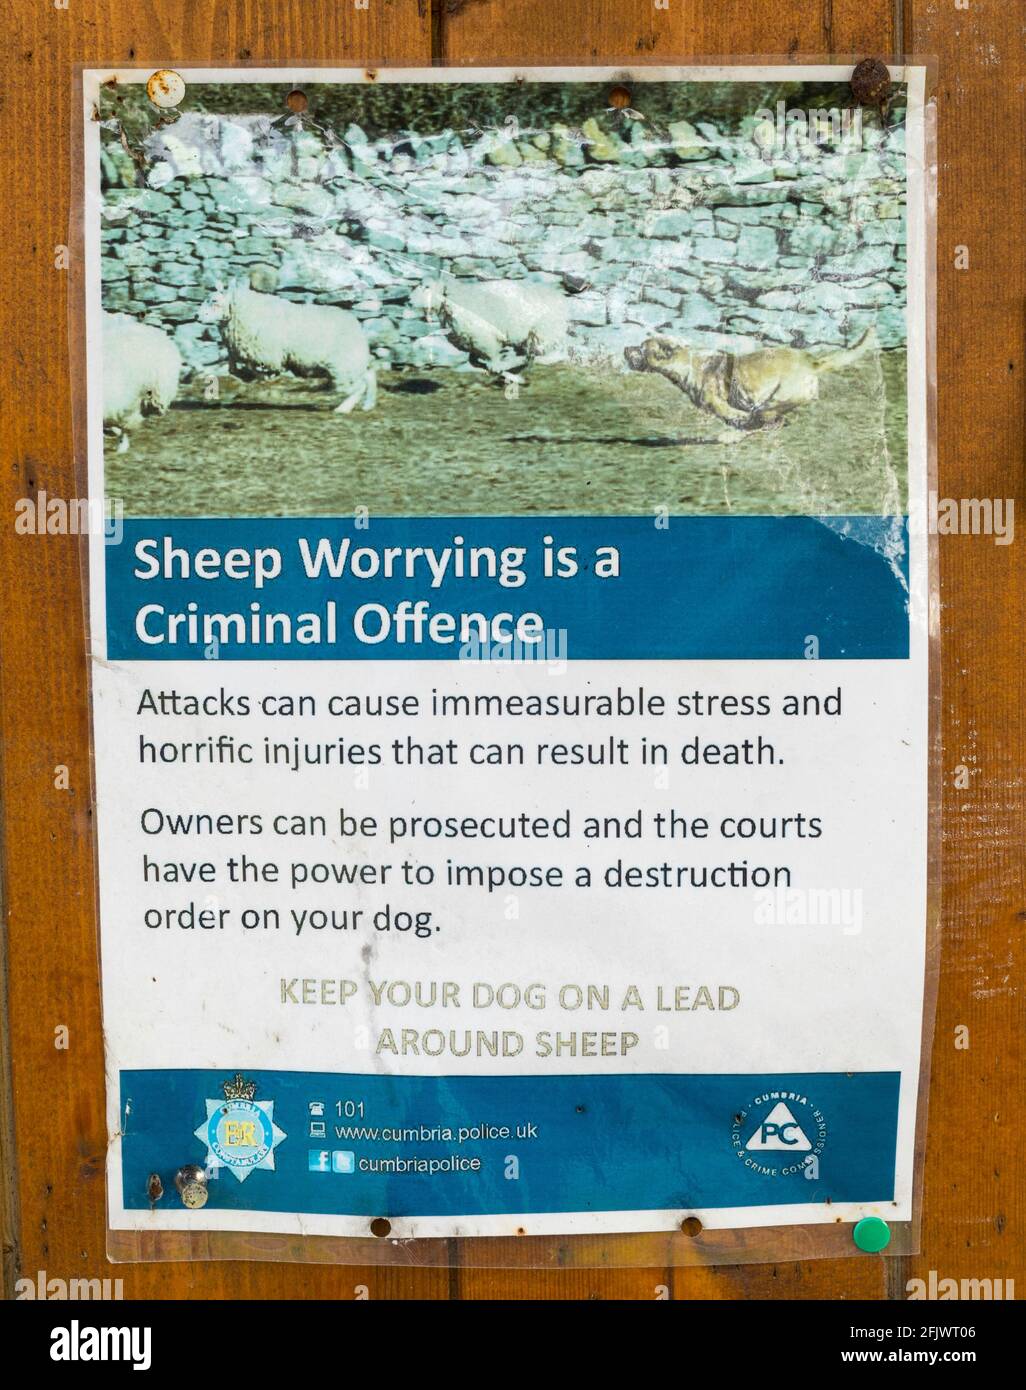 Die Polizei von Cumbria stellt fest, dass in Sedburgh, Cumbria, England, die Sorge um Schafe eine Straftat ist Stockfoto